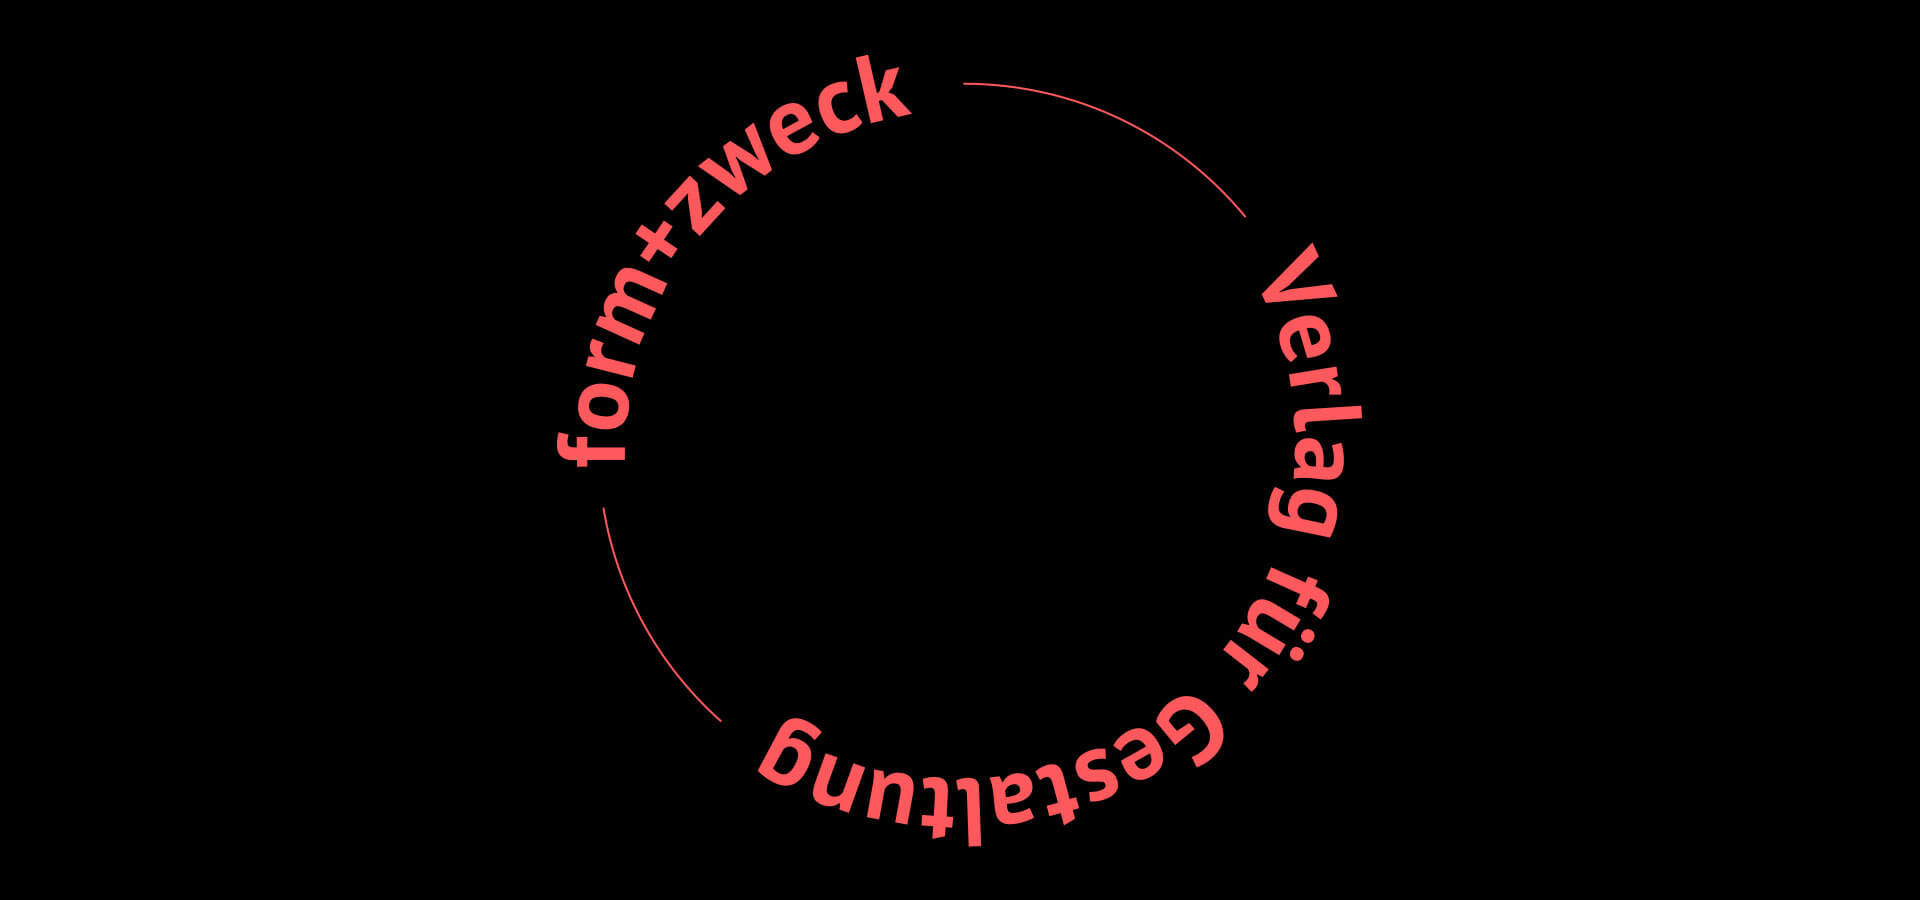 Denken & Handeln, Fine Heininger, form+zweck Verlag, Logo, Redesign, Corporate Identity, Visuelle Identität, Grafik Design, Gestaltung, webdesign, web design, relaunch, webshop, shopdesign